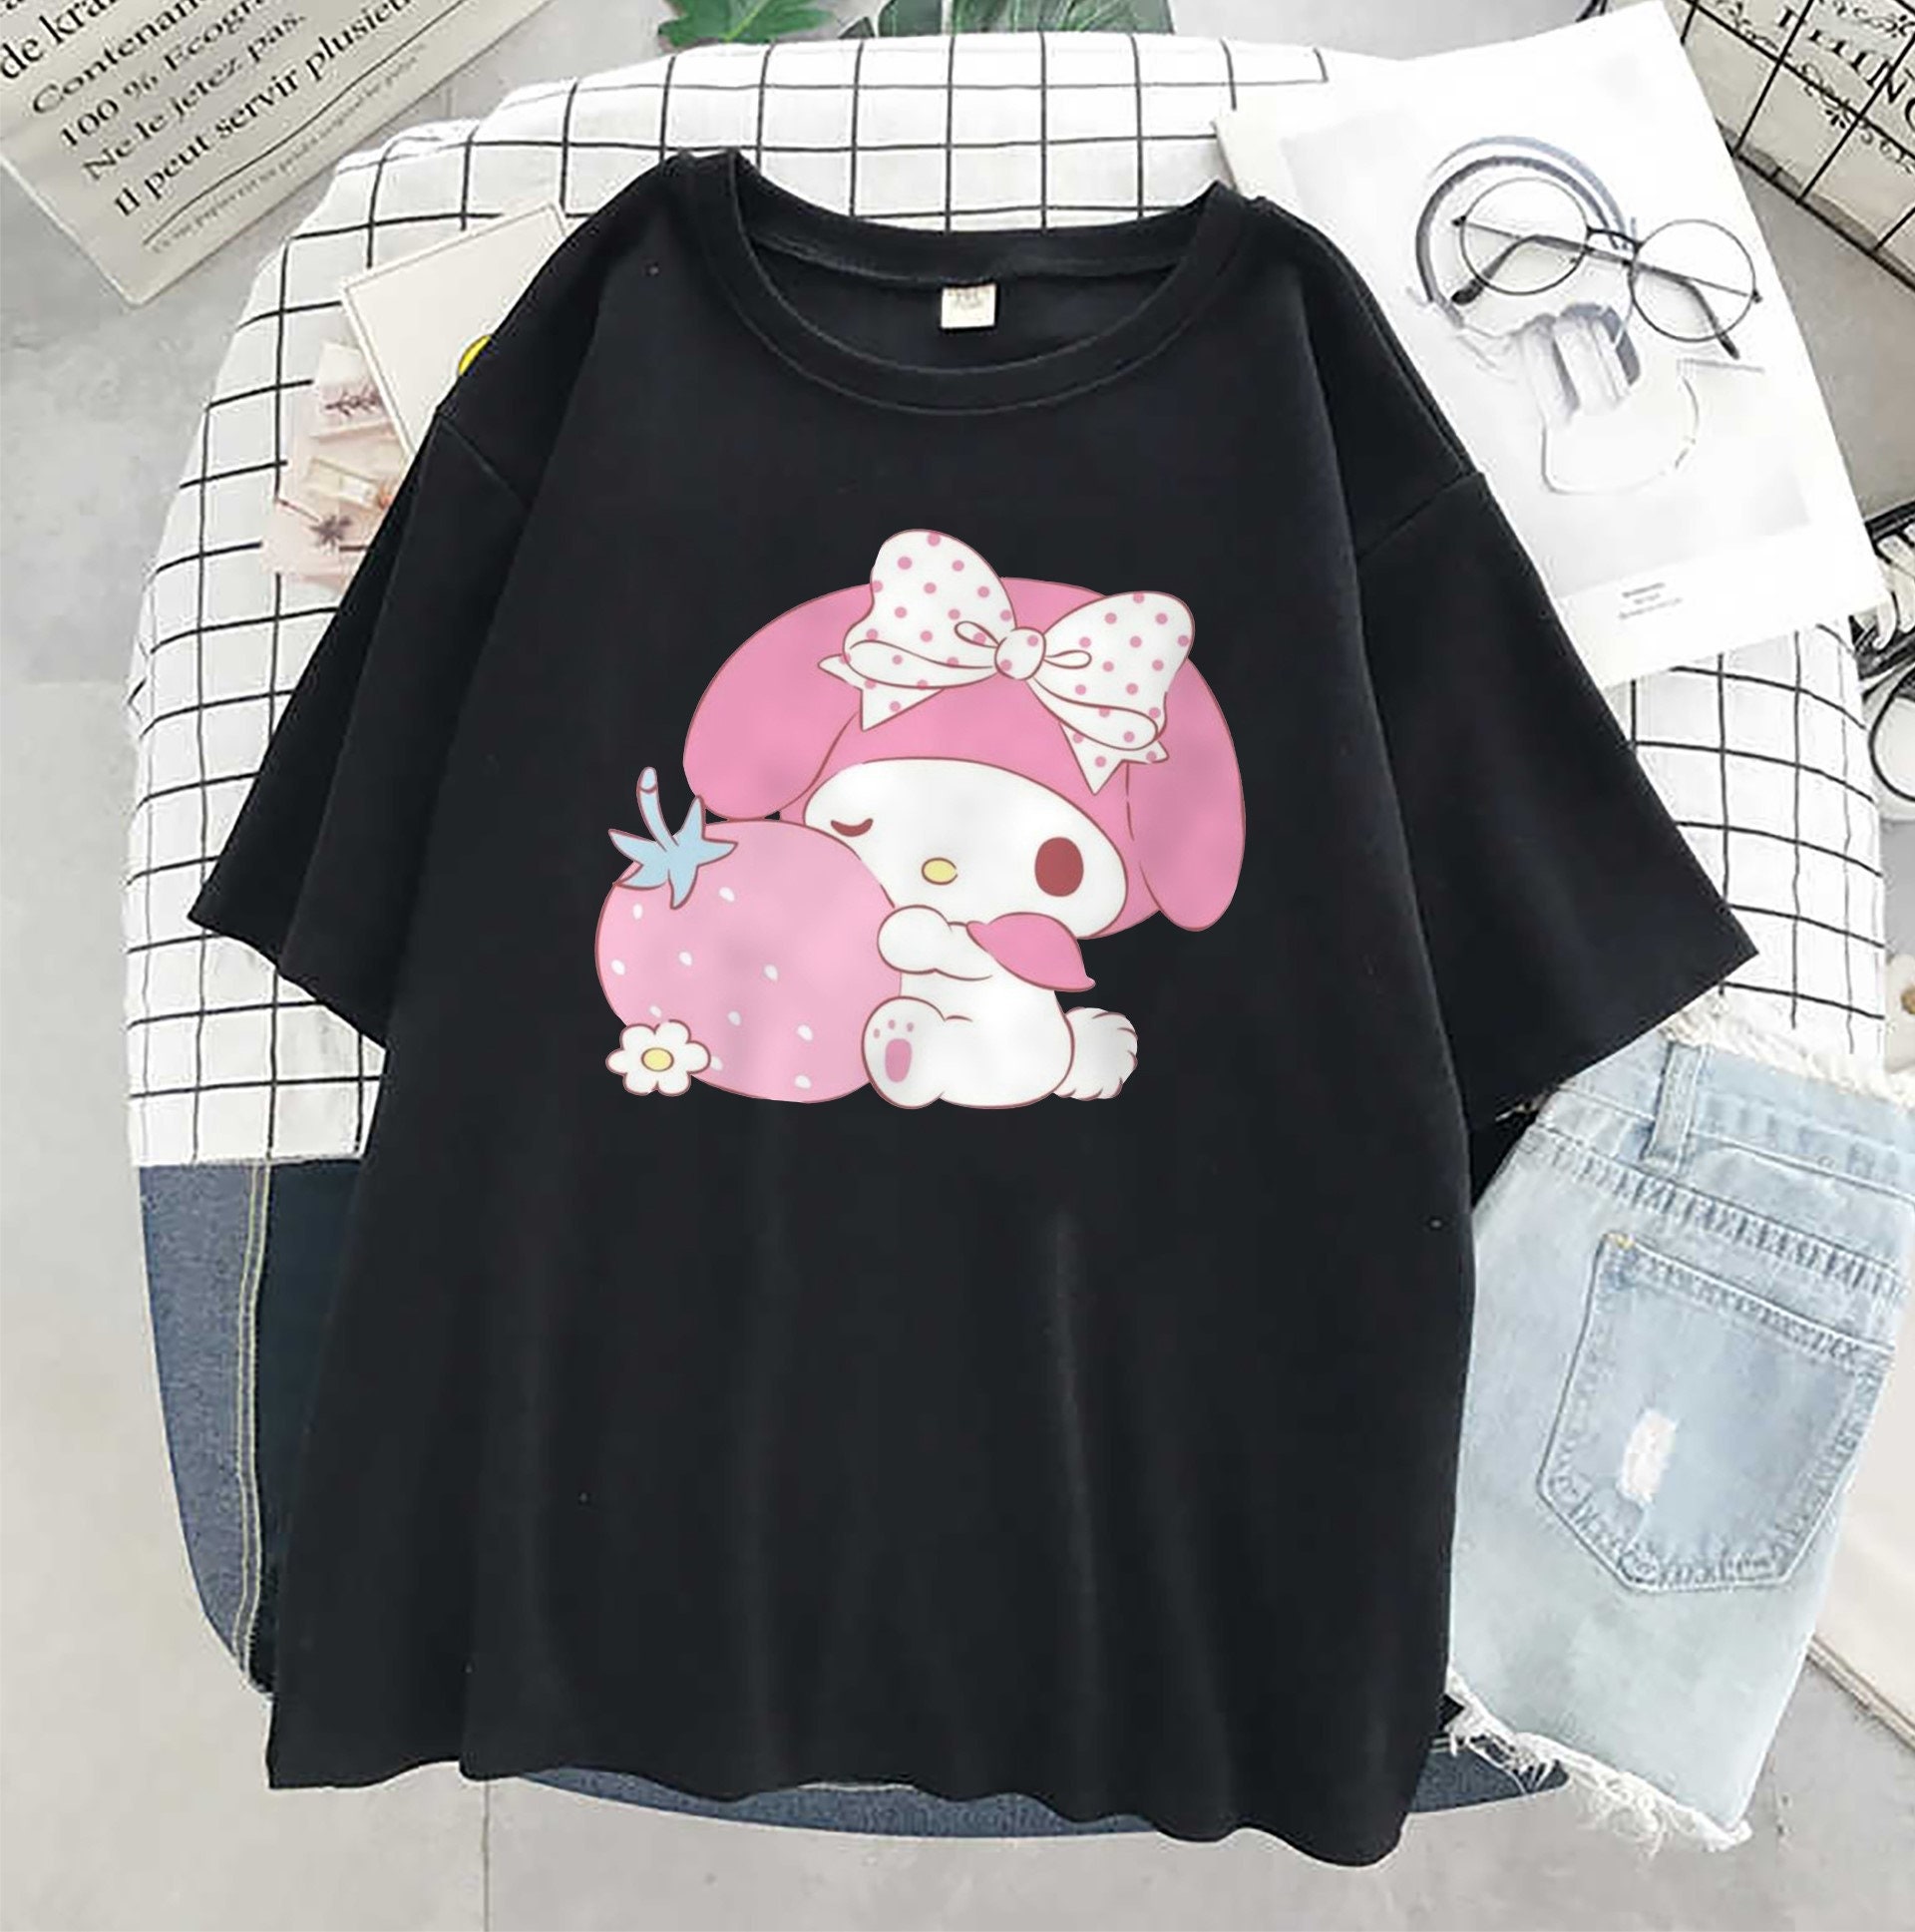 Happy T-shirt / Japanese Kaomoji Shirt / cute anime kawaii | Etsy